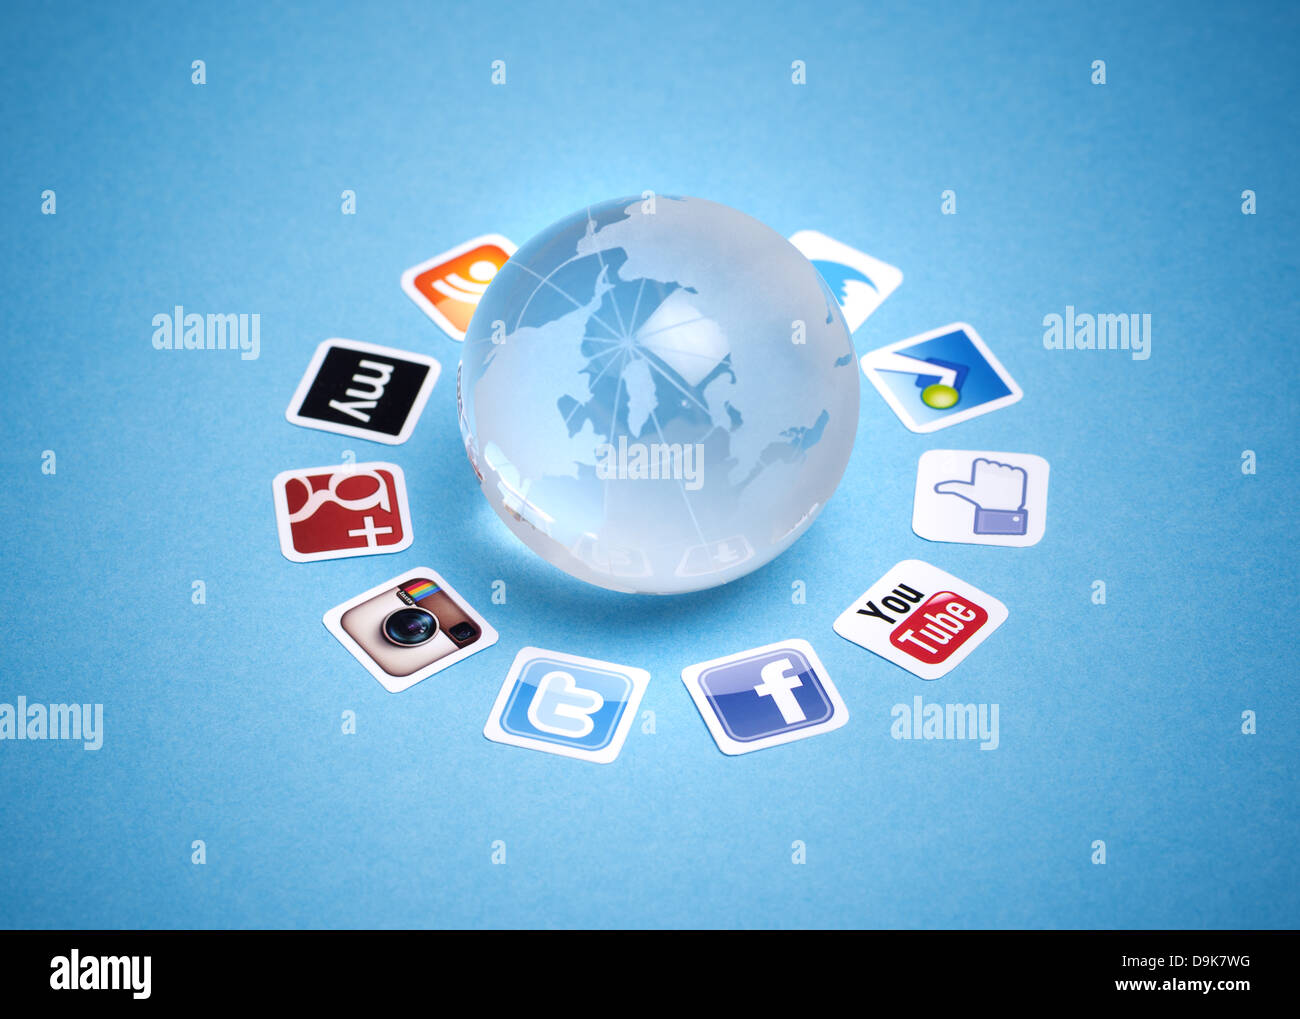 Eine Logo-Sammlung von bekannten social-Media-Marken auf Papier gedruckt und um Glaskugel gelegt. Stockfoto